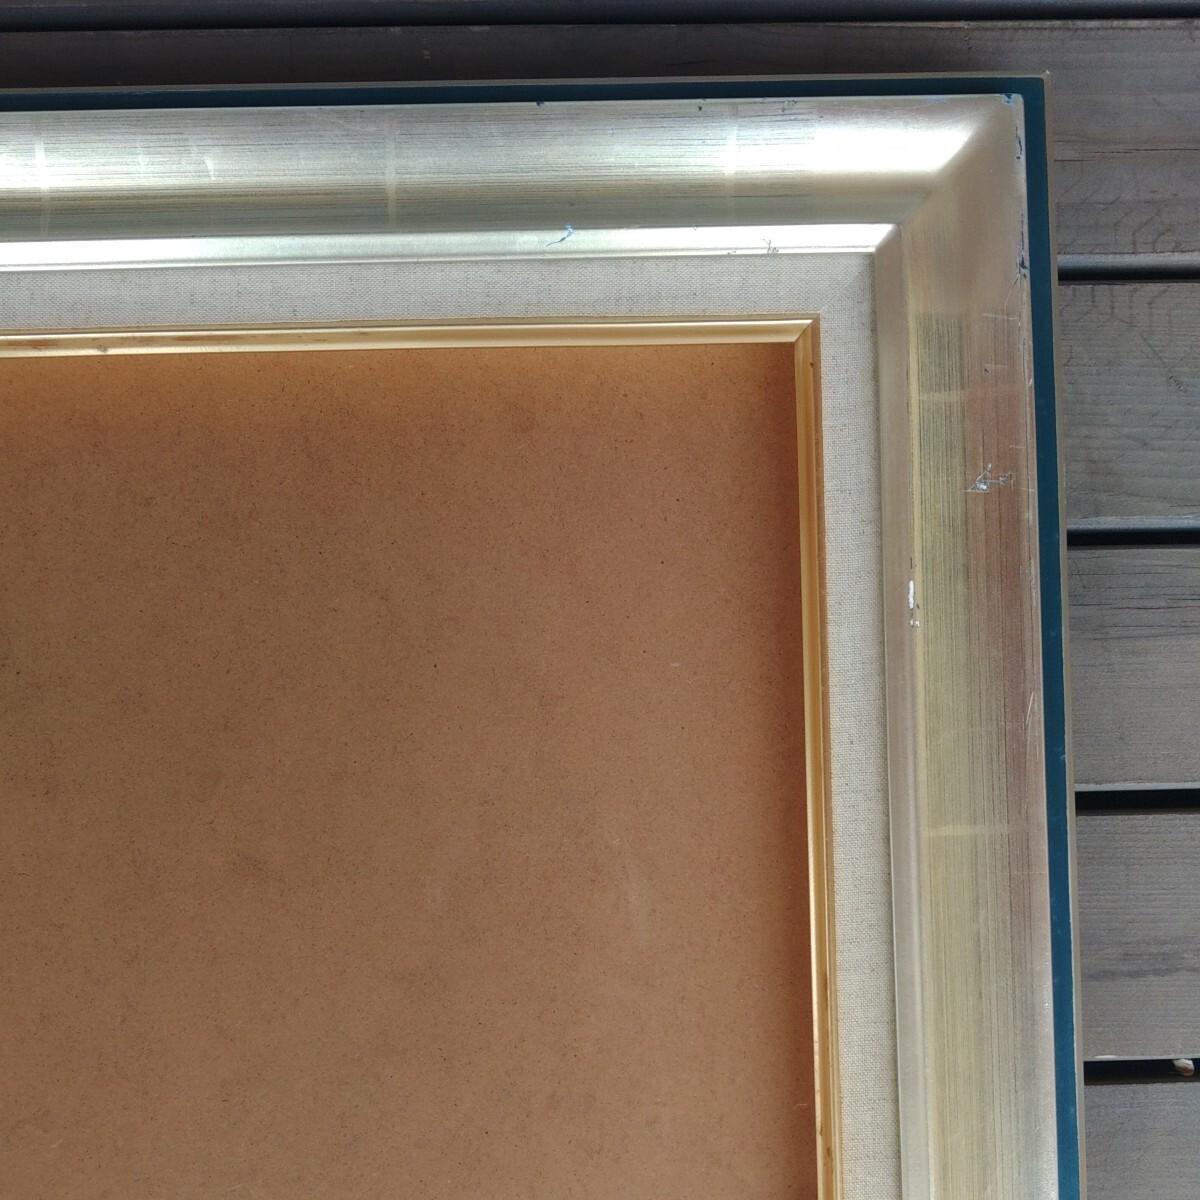  живопись масляными красками сумма пустой сумма F8 Gold стекло ввод корпус размер примерно 54cm×61cm×5cm живопись маслом сумма сумма . получение возможность пустой сумма kaz